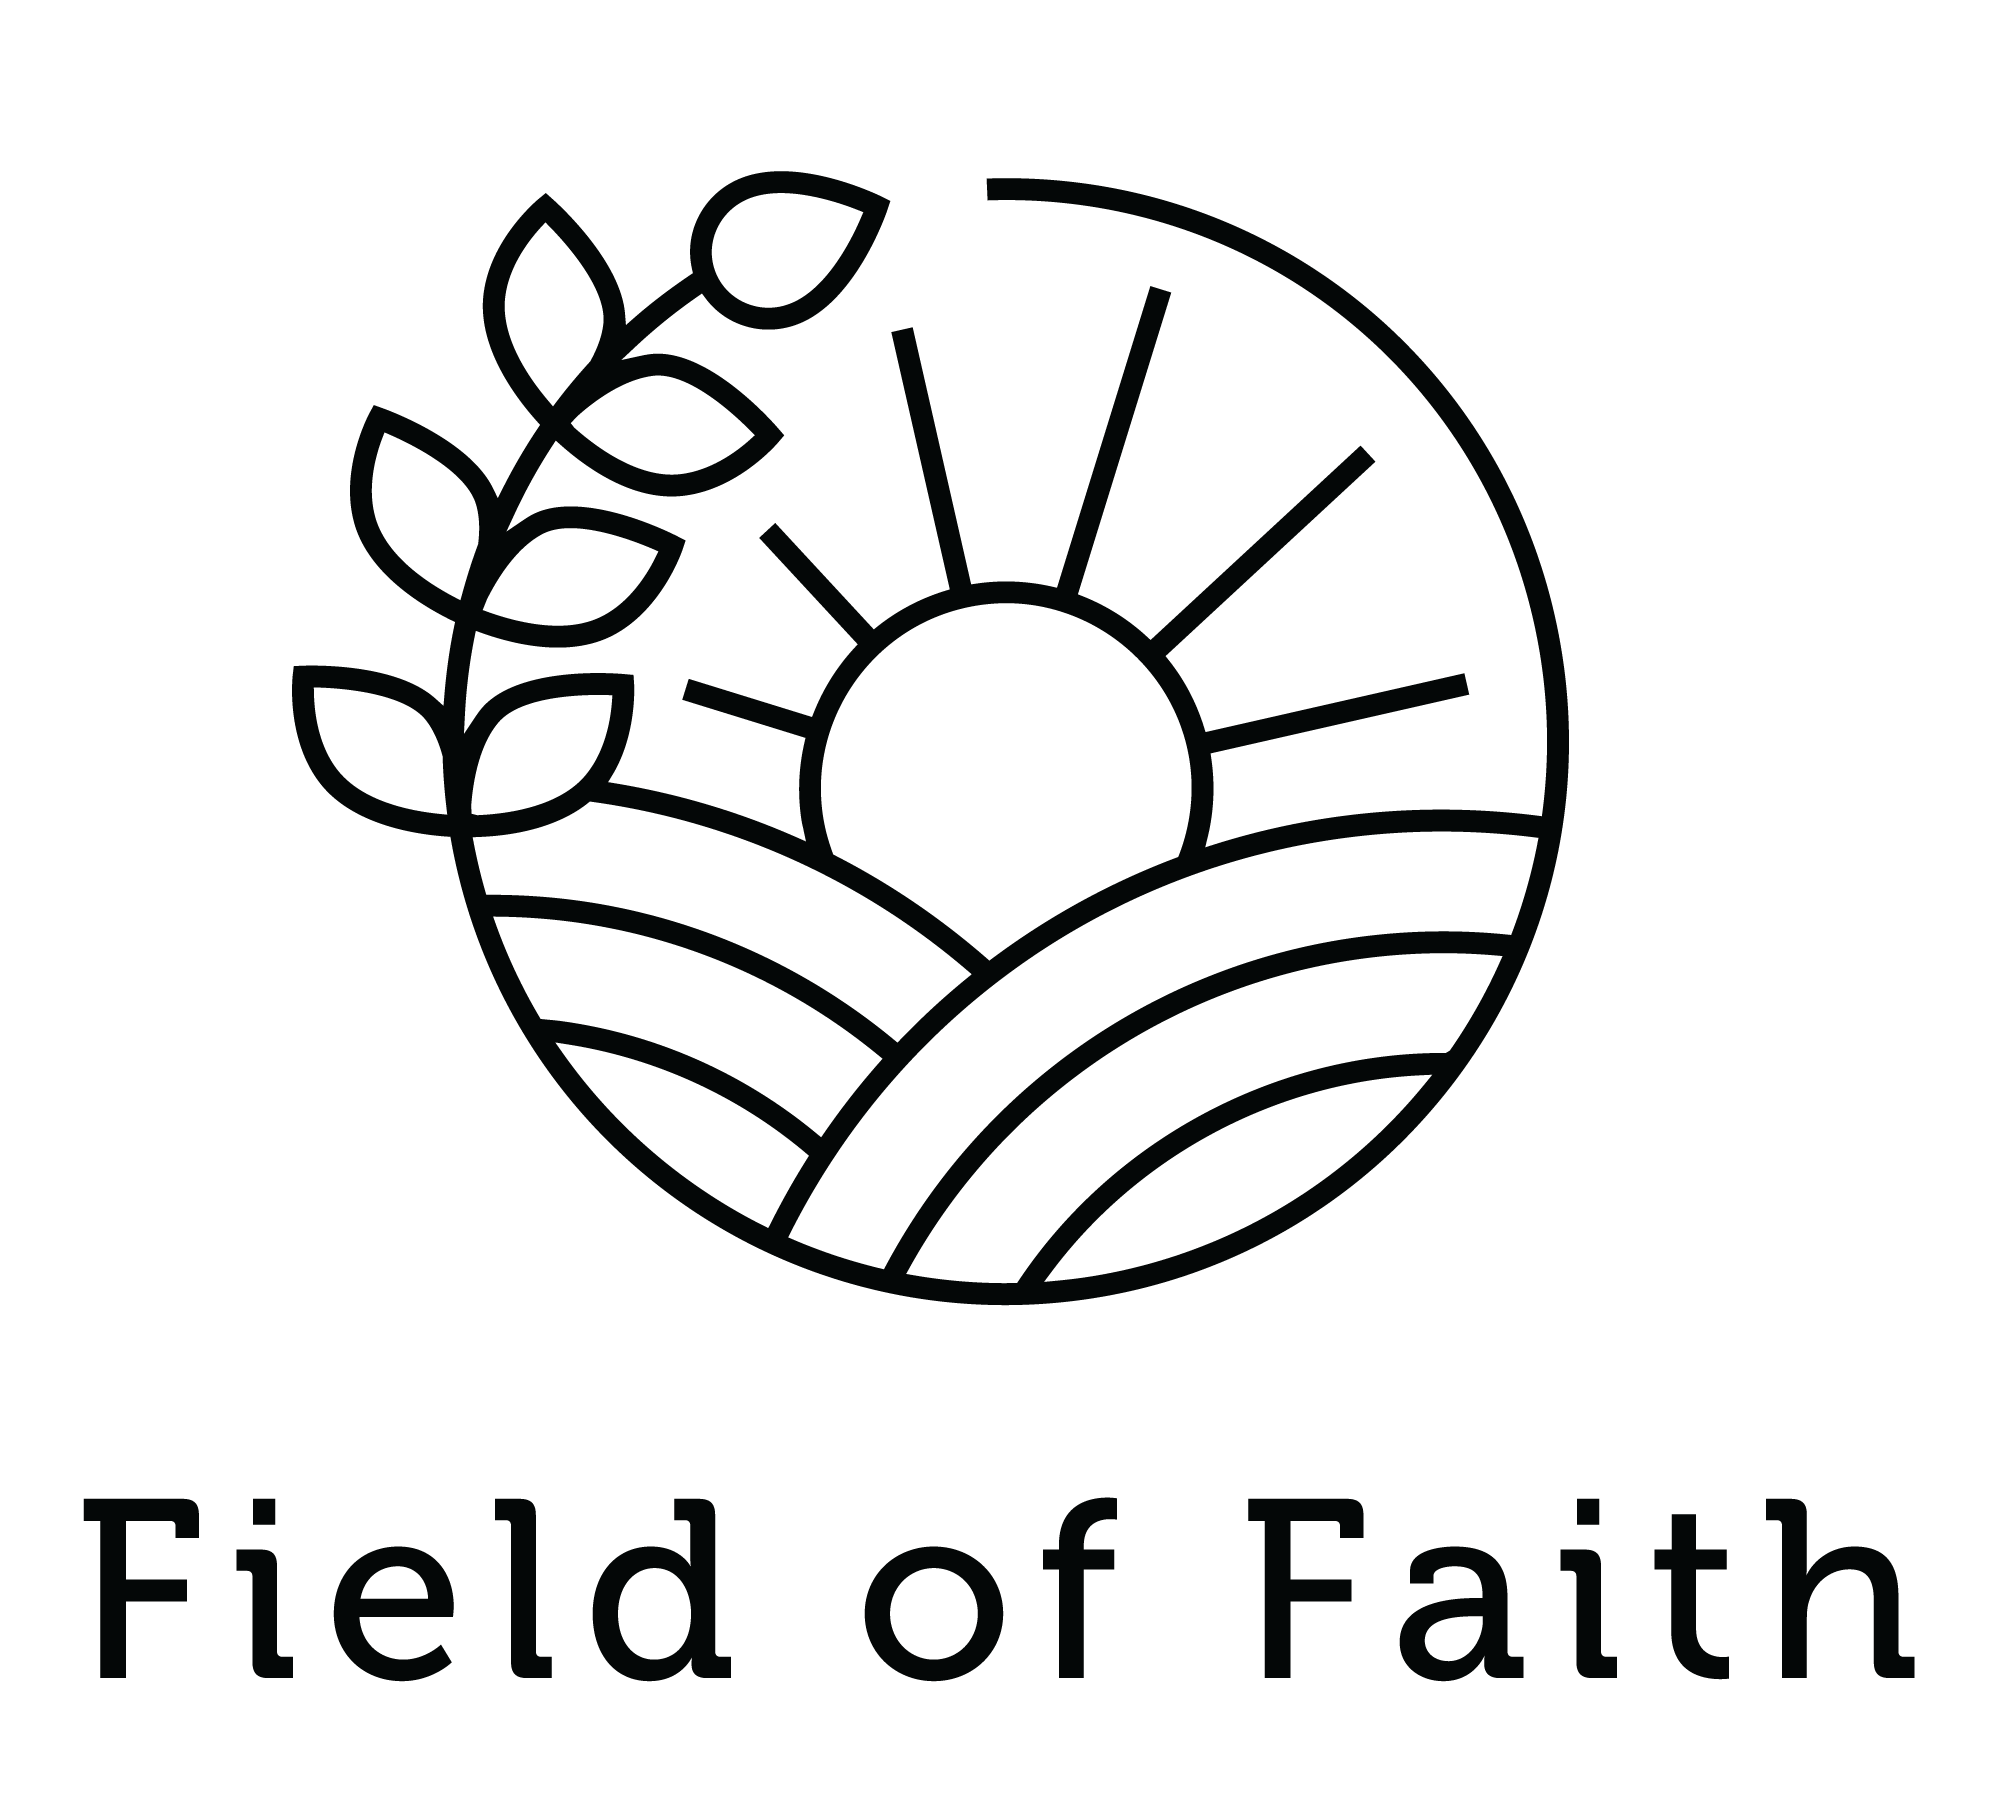 Field of Faith